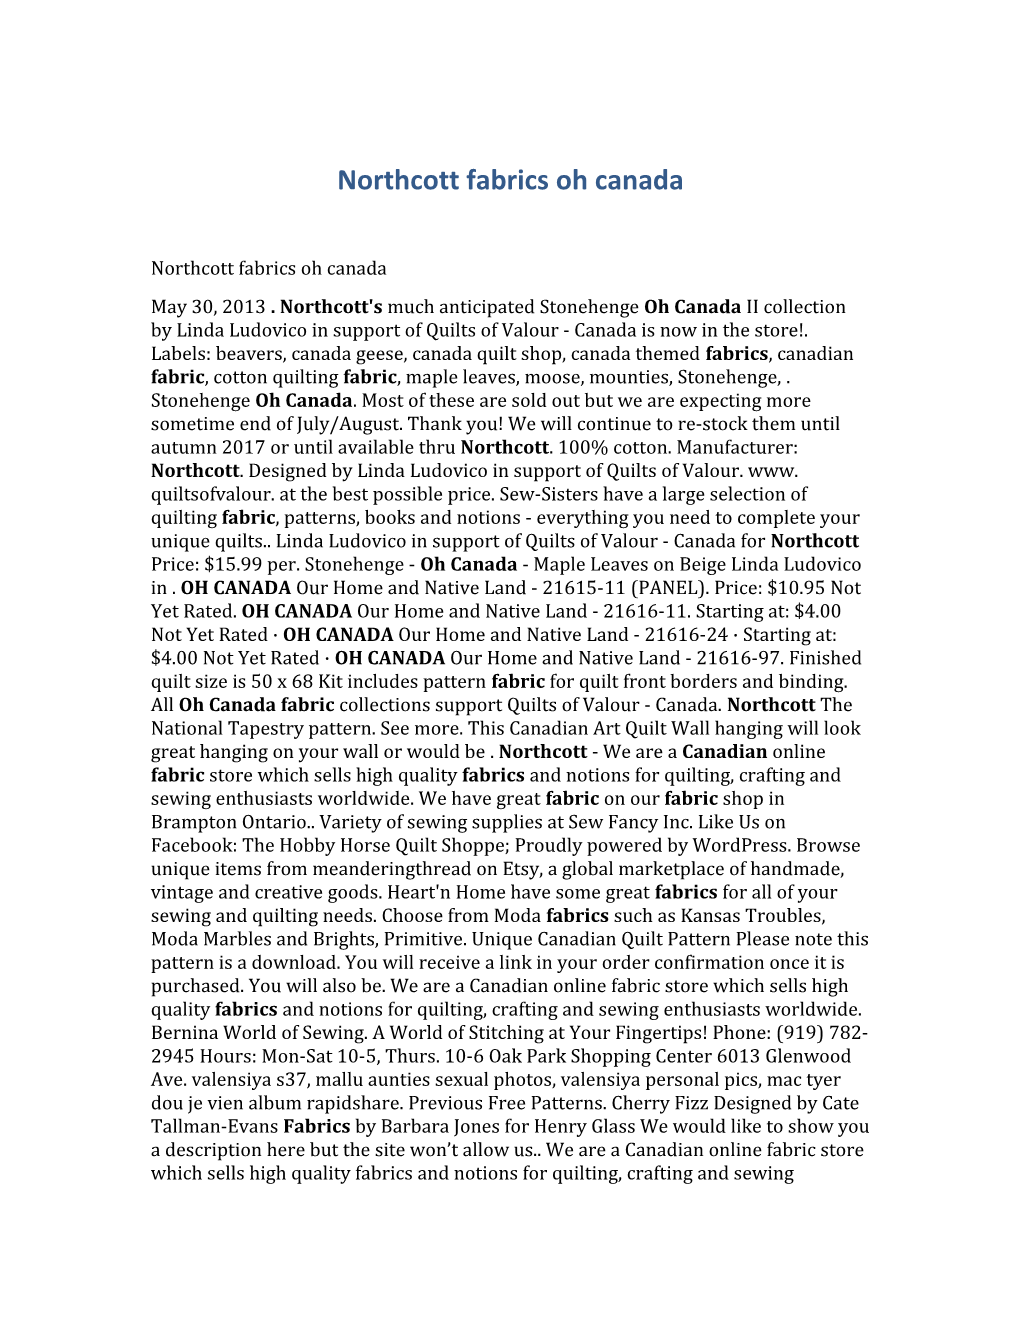 Northcott Fabrics Oh Canada